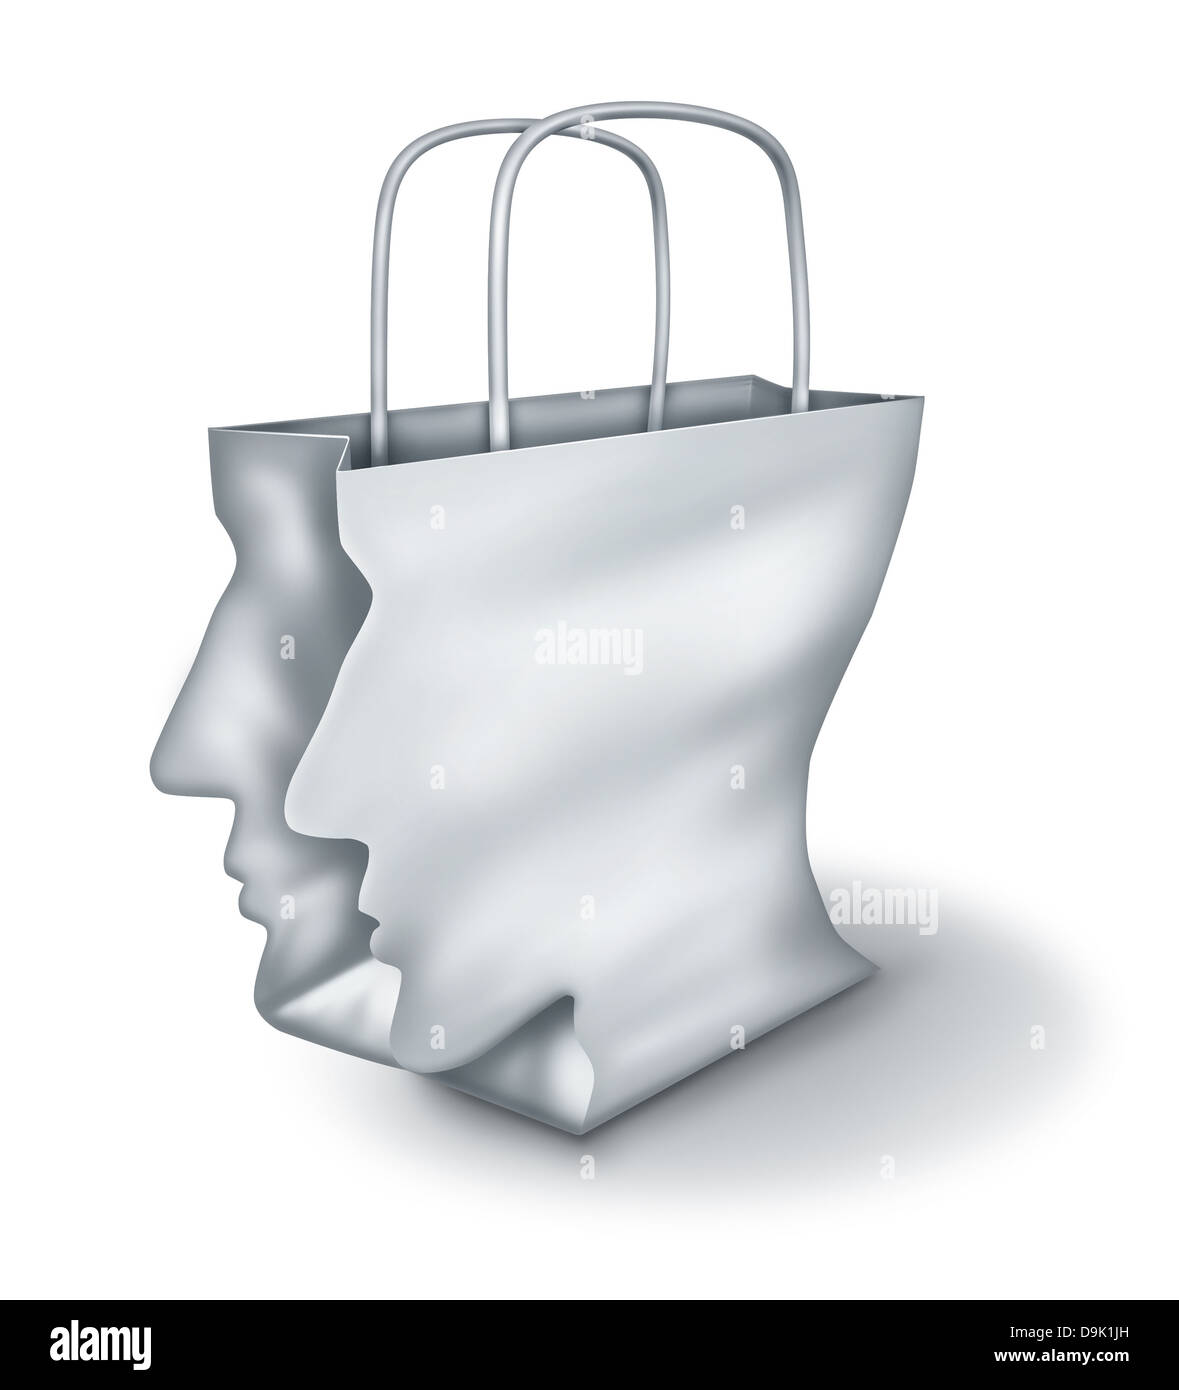 Soluciones de compras y compradores inteligentes como un concepto de un  cazador de gangas con una bolsa de papel blanco con forma de cabeza humana  sobre un fondo blanco Fotografía de stock -